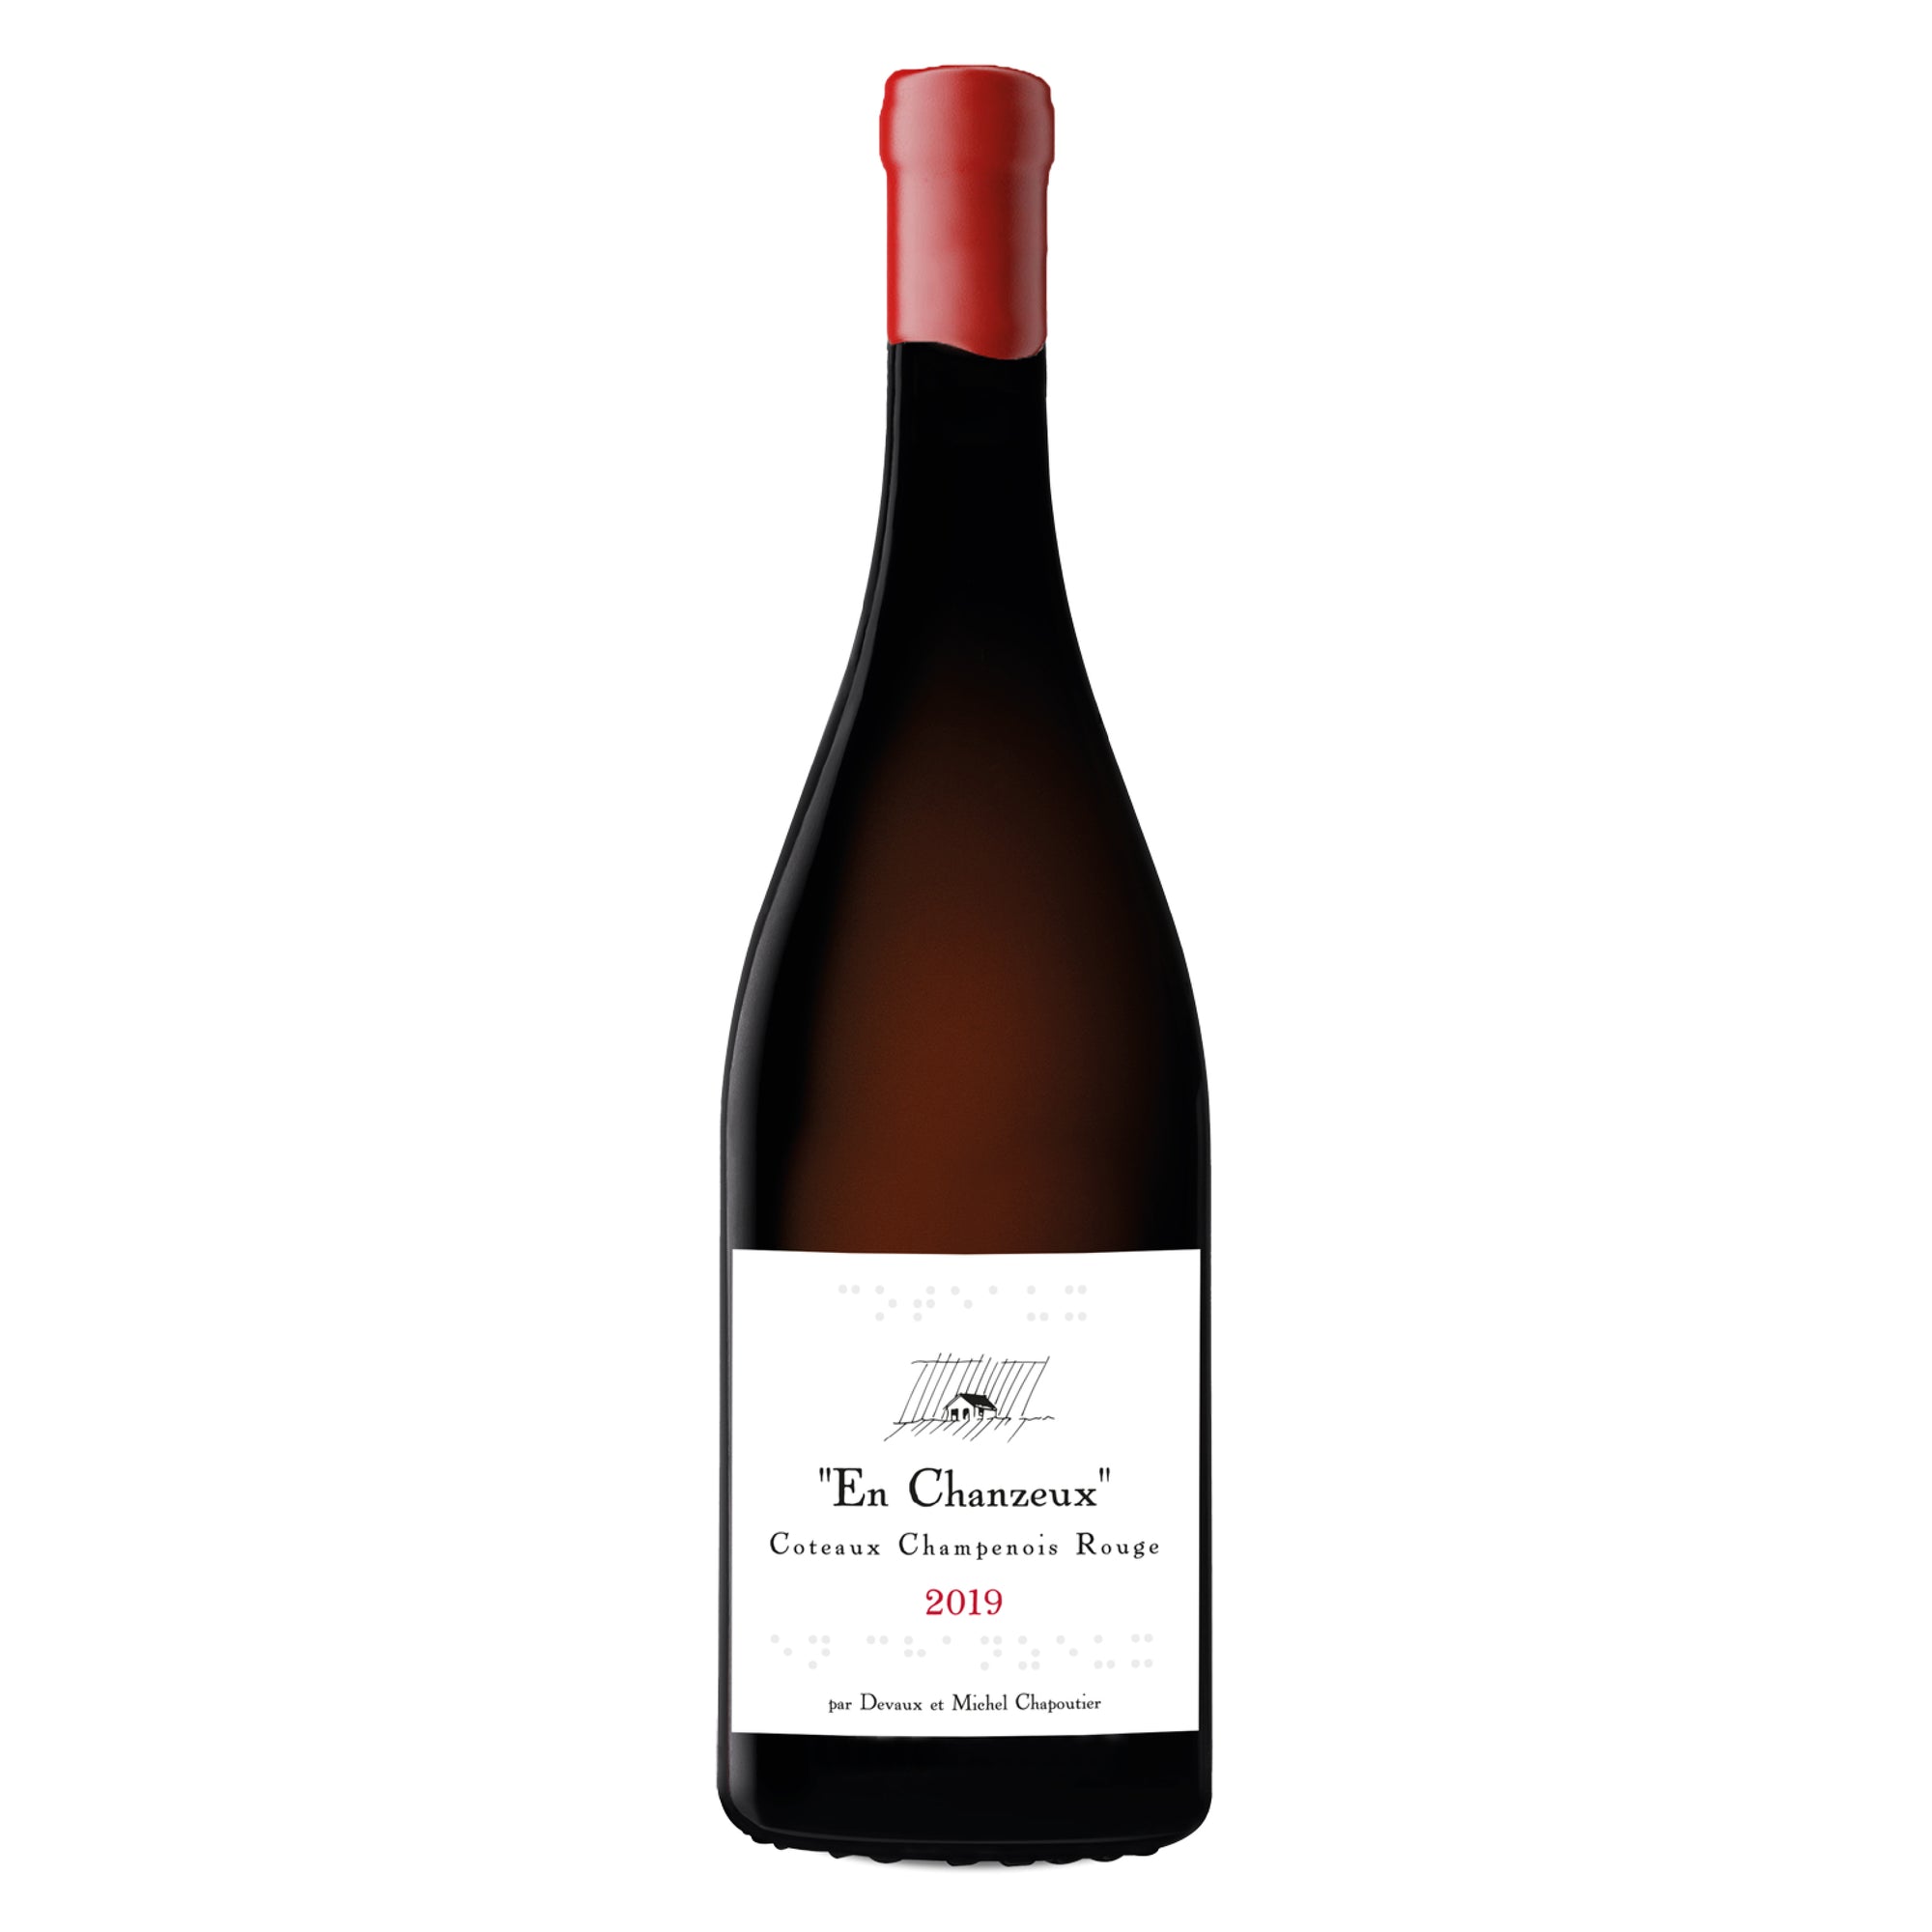 DEVAUX & M. CHAPOUTIER Coteaux Champenois "En Chanzeux" 2019 (Still Red Wine)